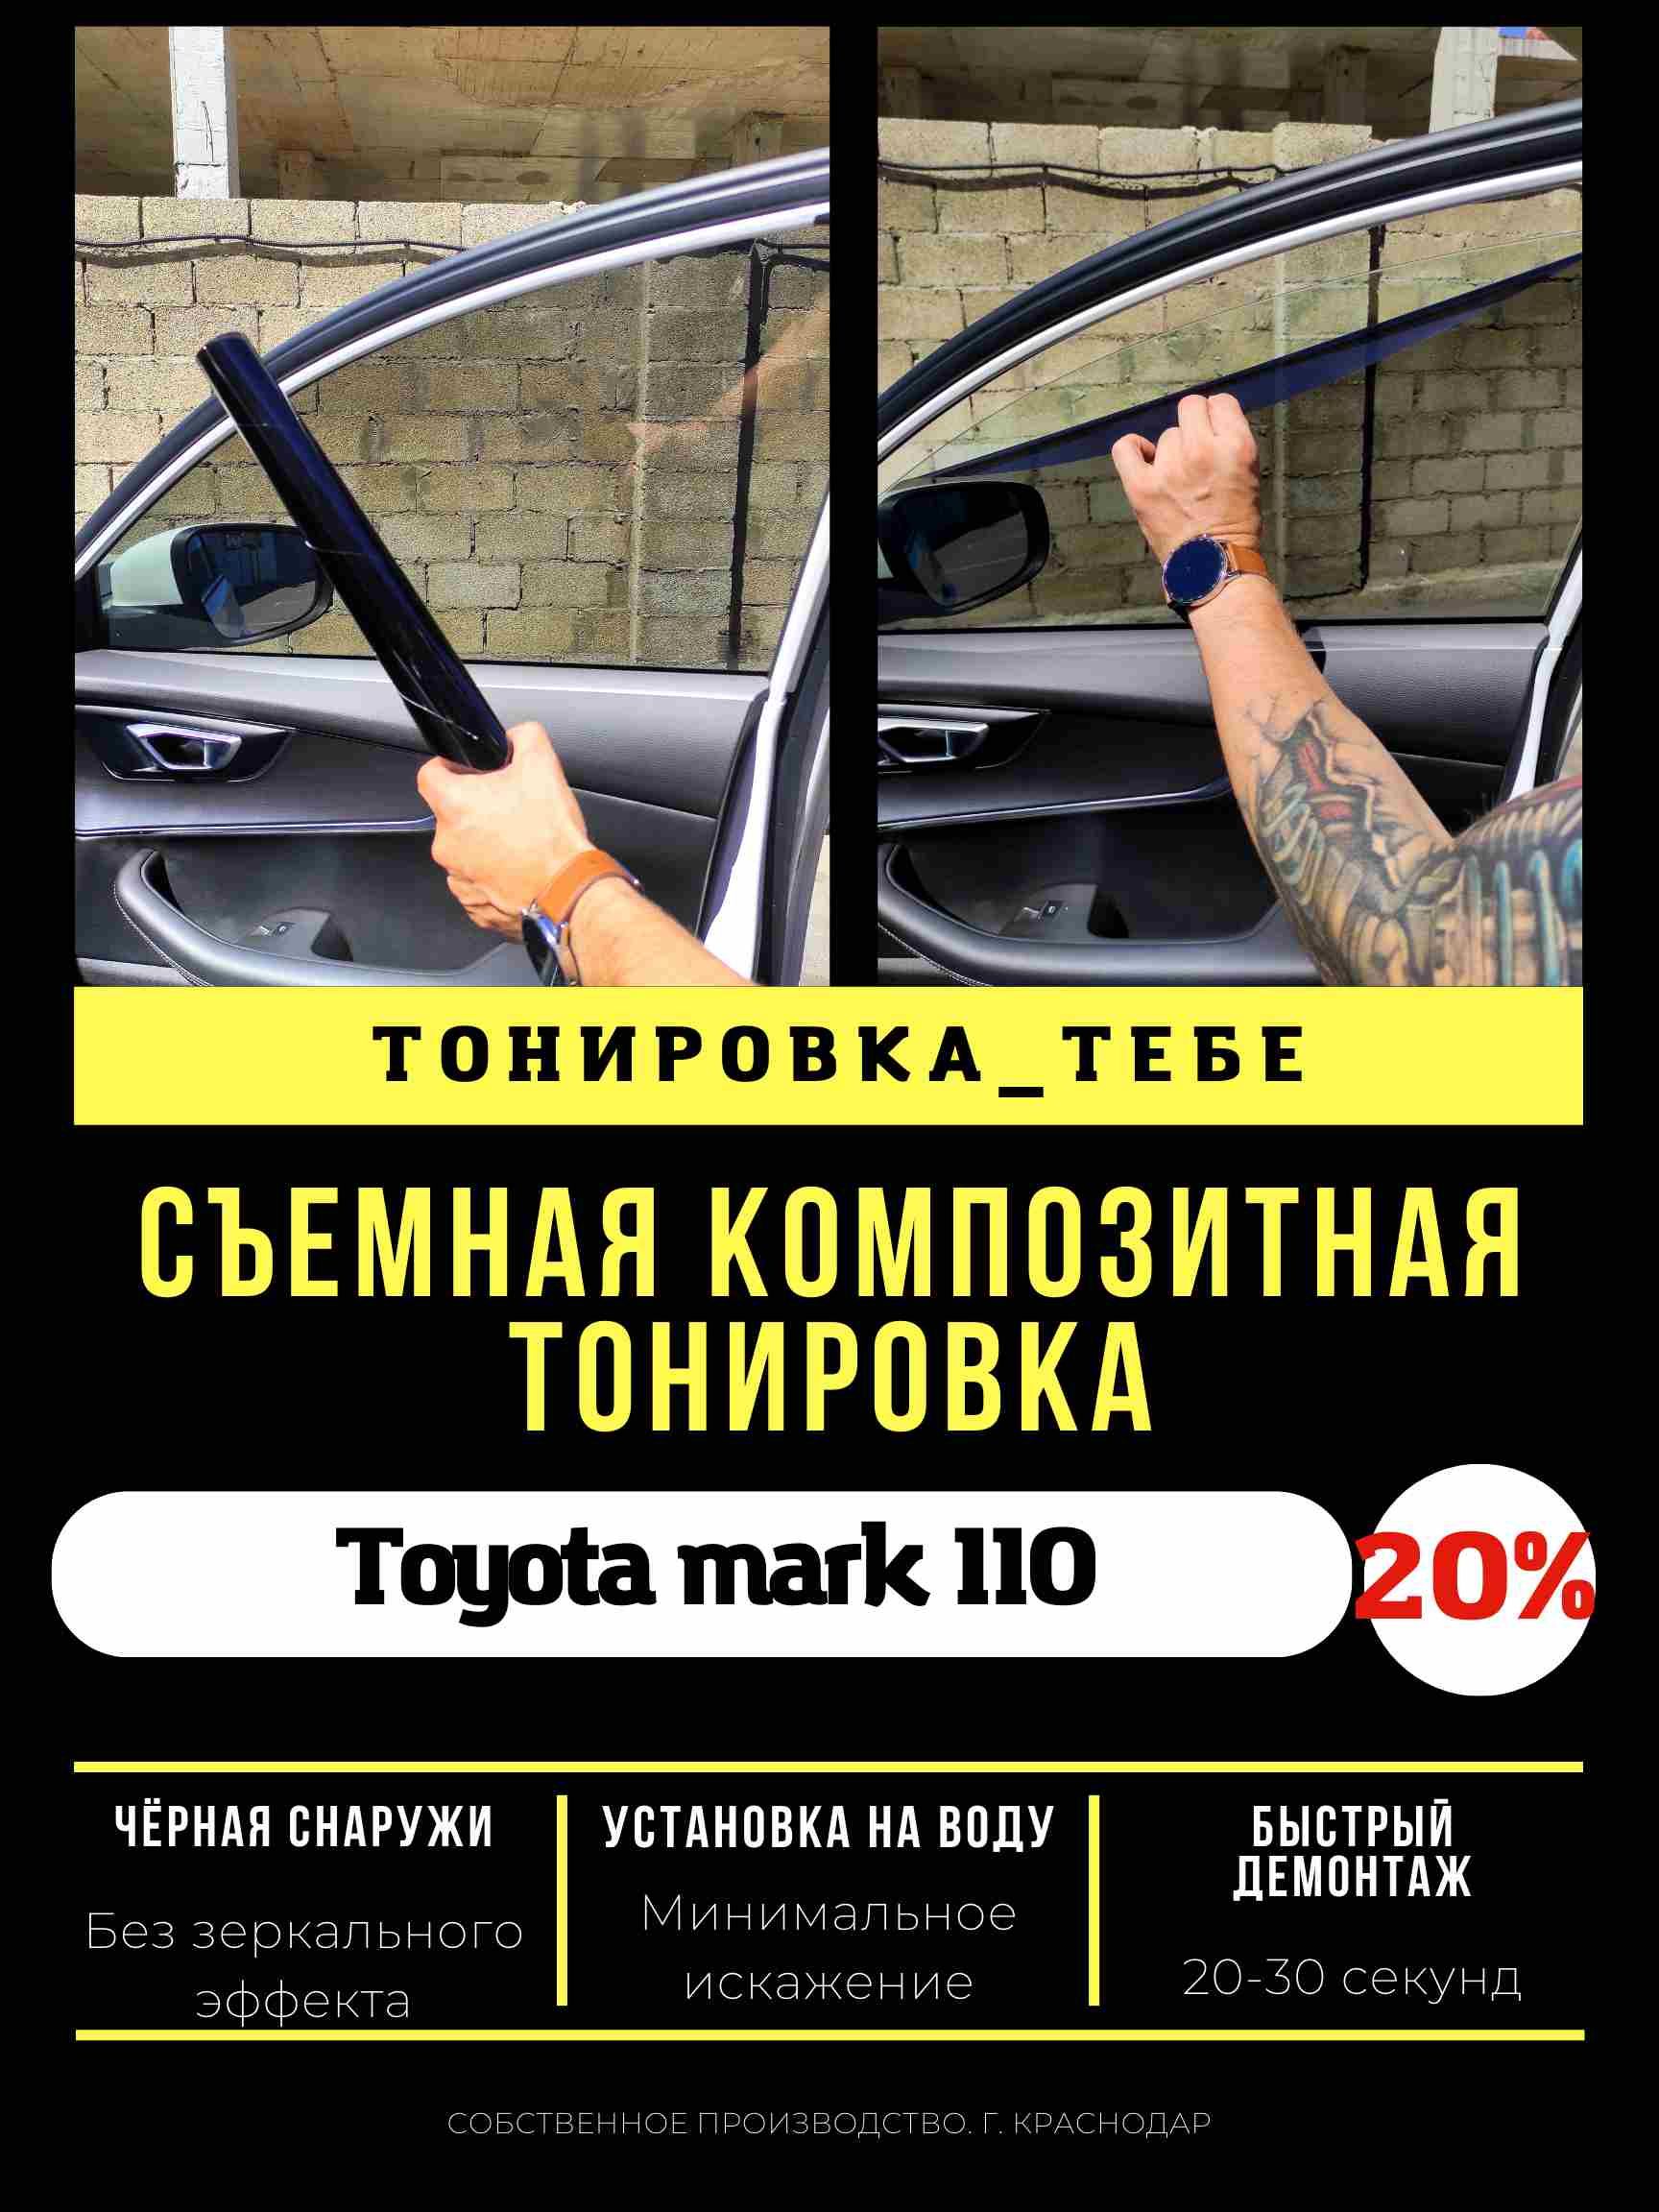 Повторная тонировка автомобиля недорого в Москве - цены в компании «Тонировка авто»